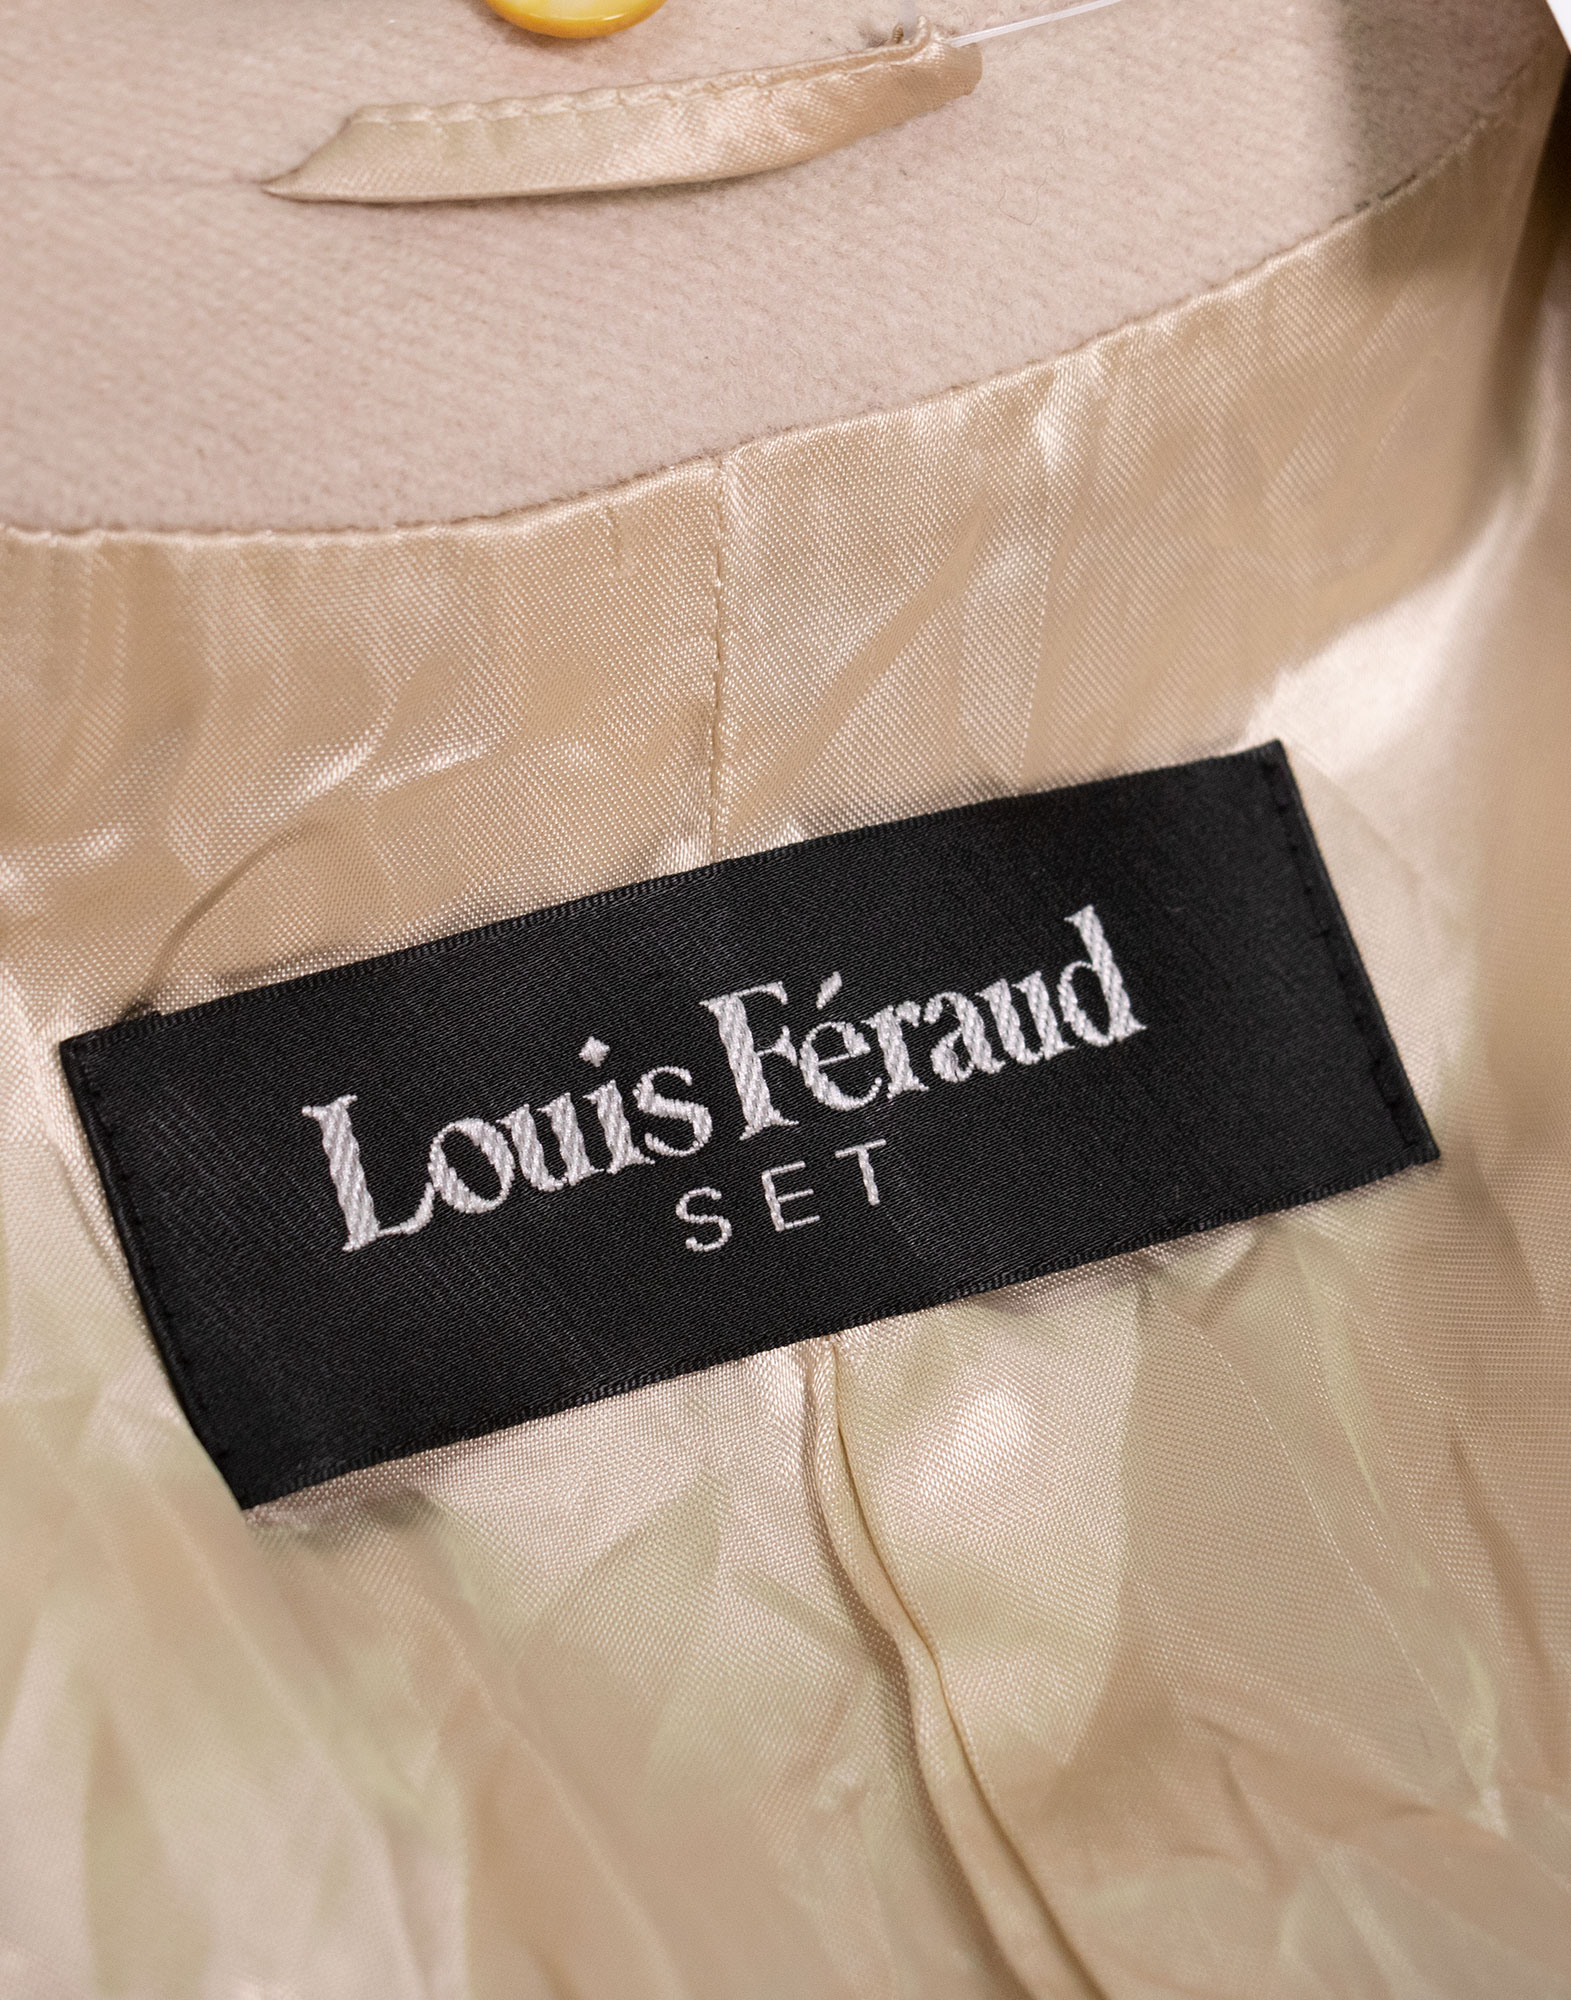 Louis Feraud - 90s Coat in virgin wool